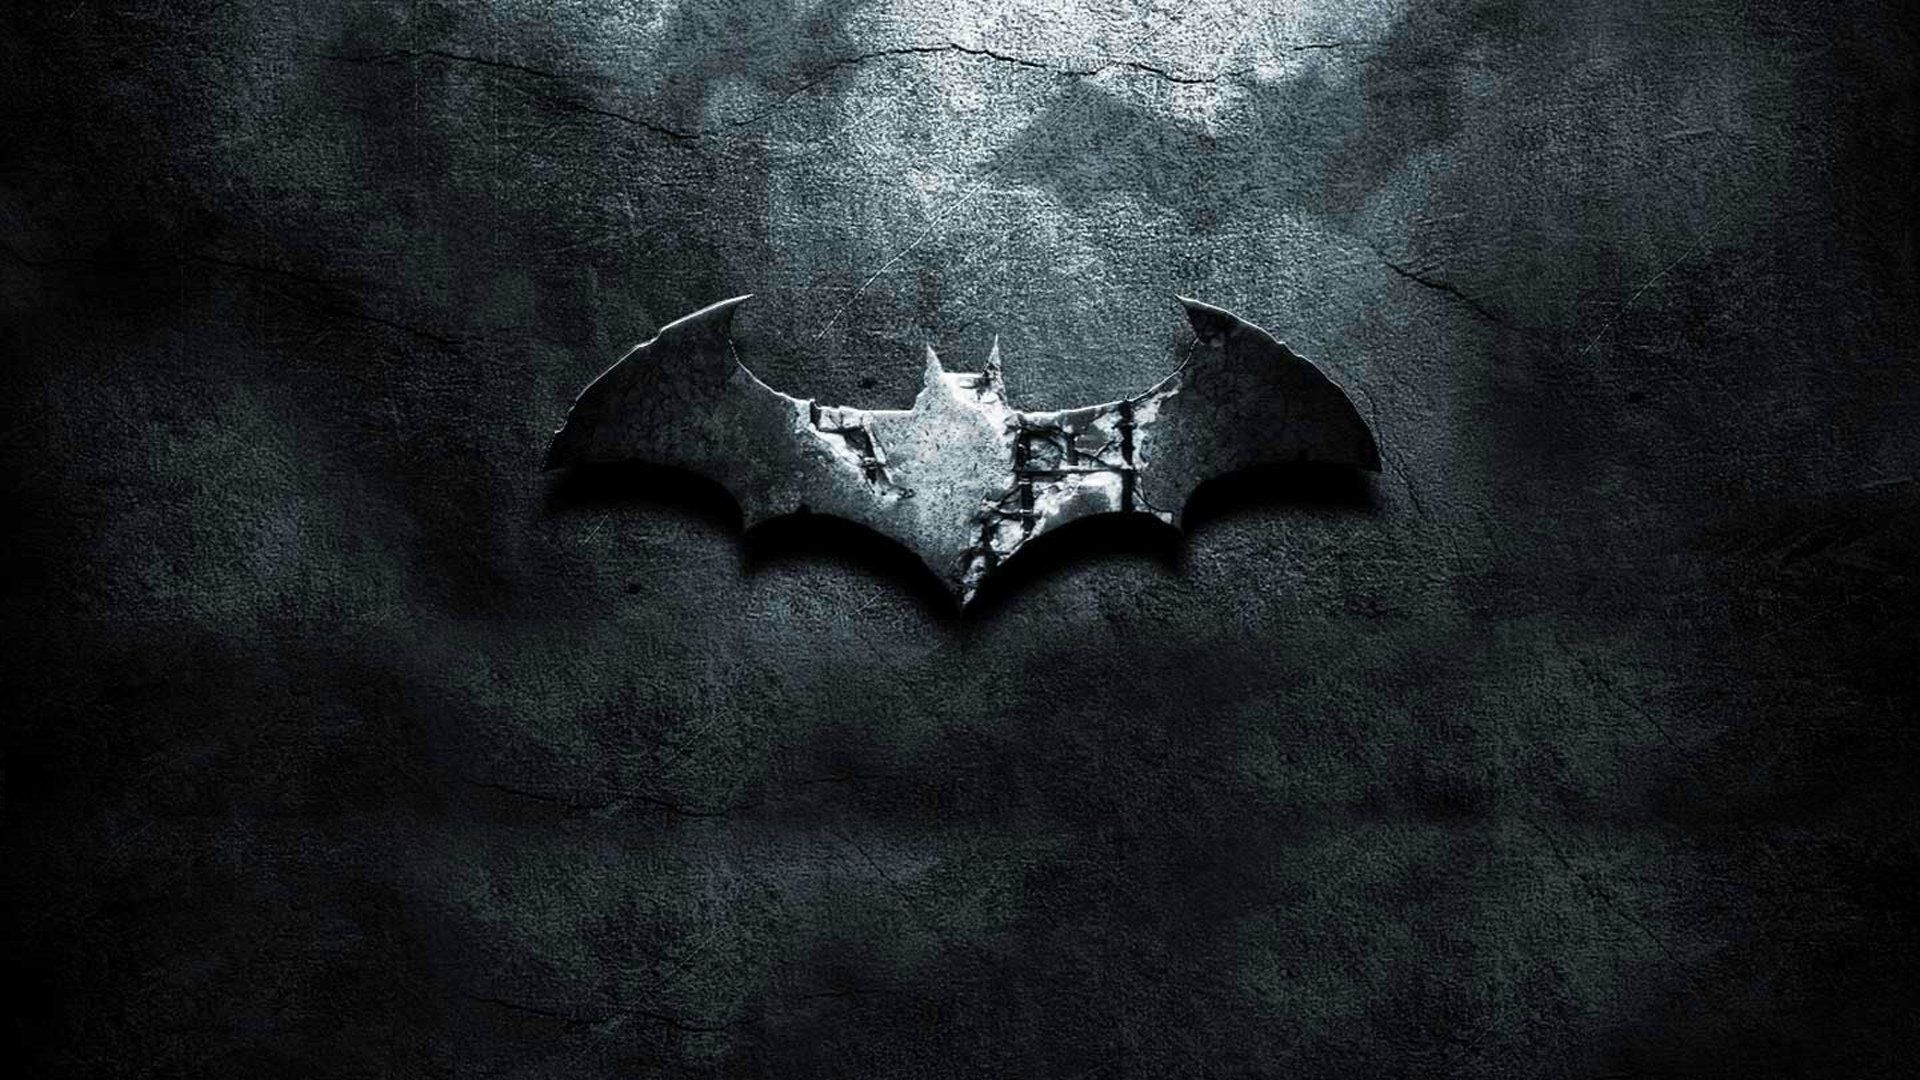 Free Batman Logo Wallpaper, Download Free Batman Logo Wallpaper png image, Free ClipArts on Clipart Library